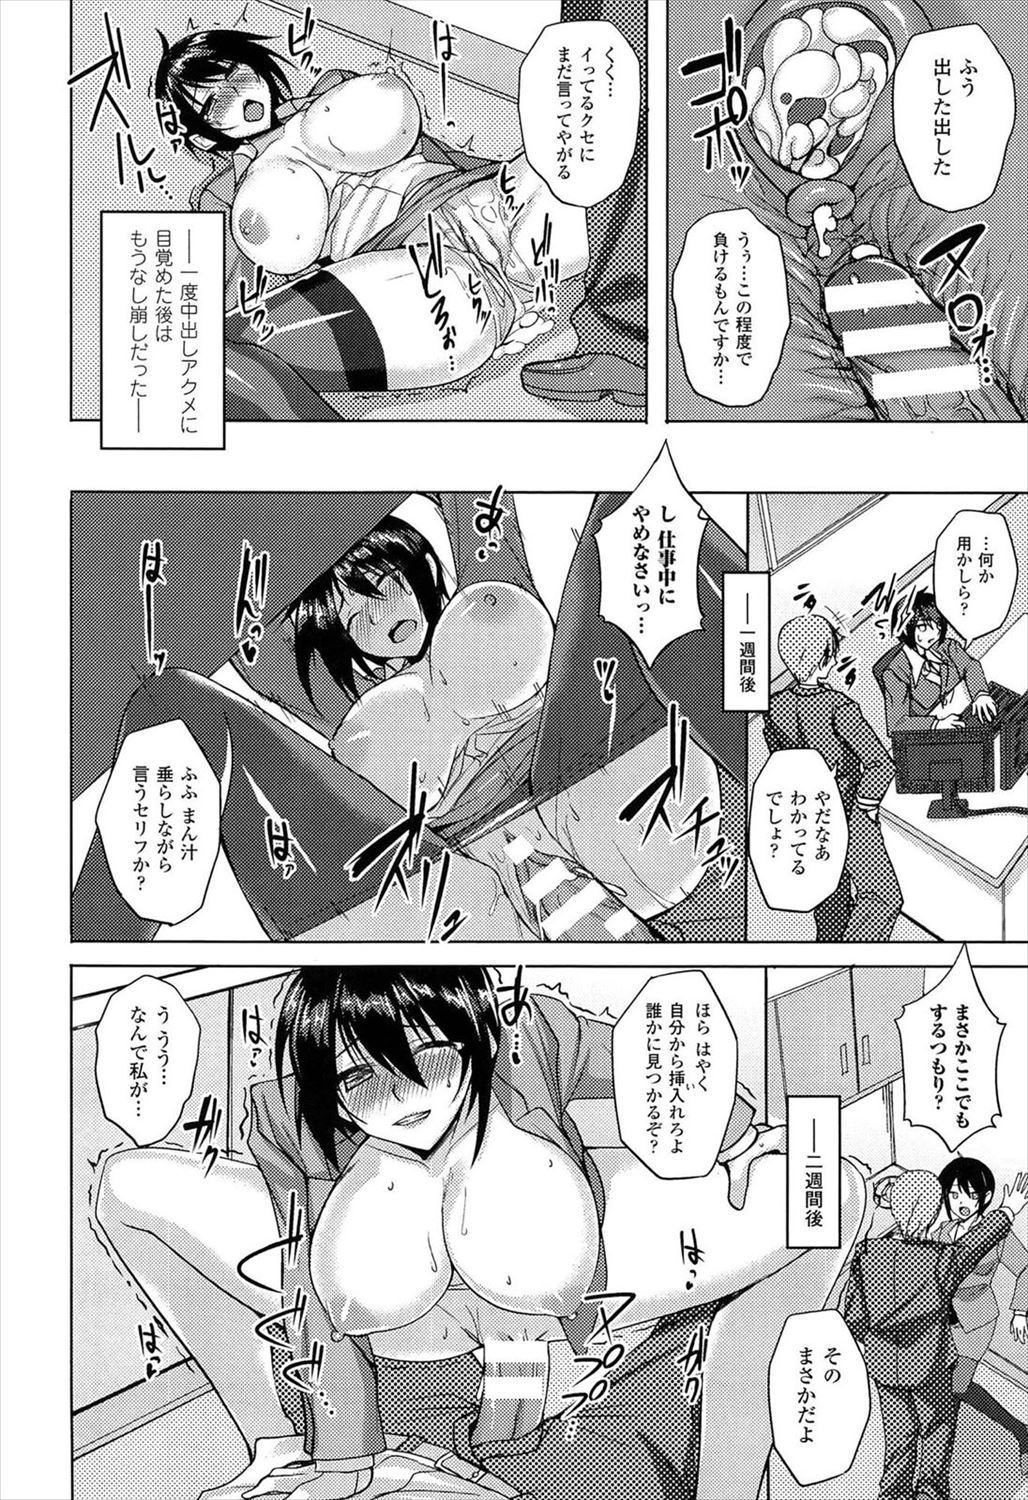 【エロ漫画】ツンツンしている小憎たらしい女上司に睡眠薬を仕込み中出し種付けレイプｗｗｗ